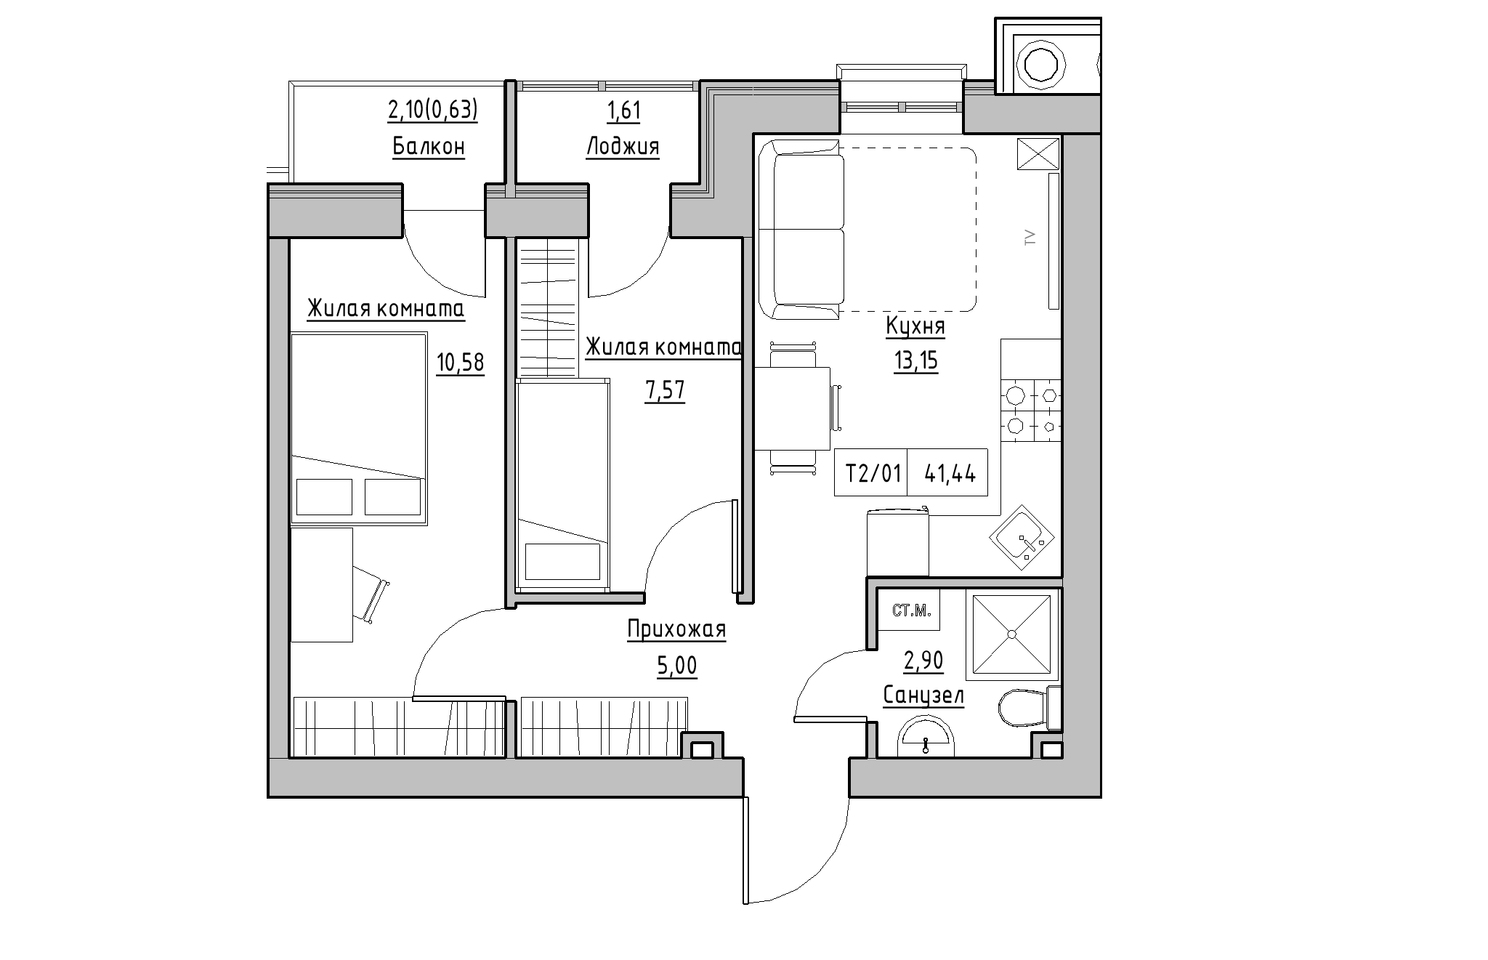 Планування 2-к квартира площею 41.44м2, KS-010-03/0005.